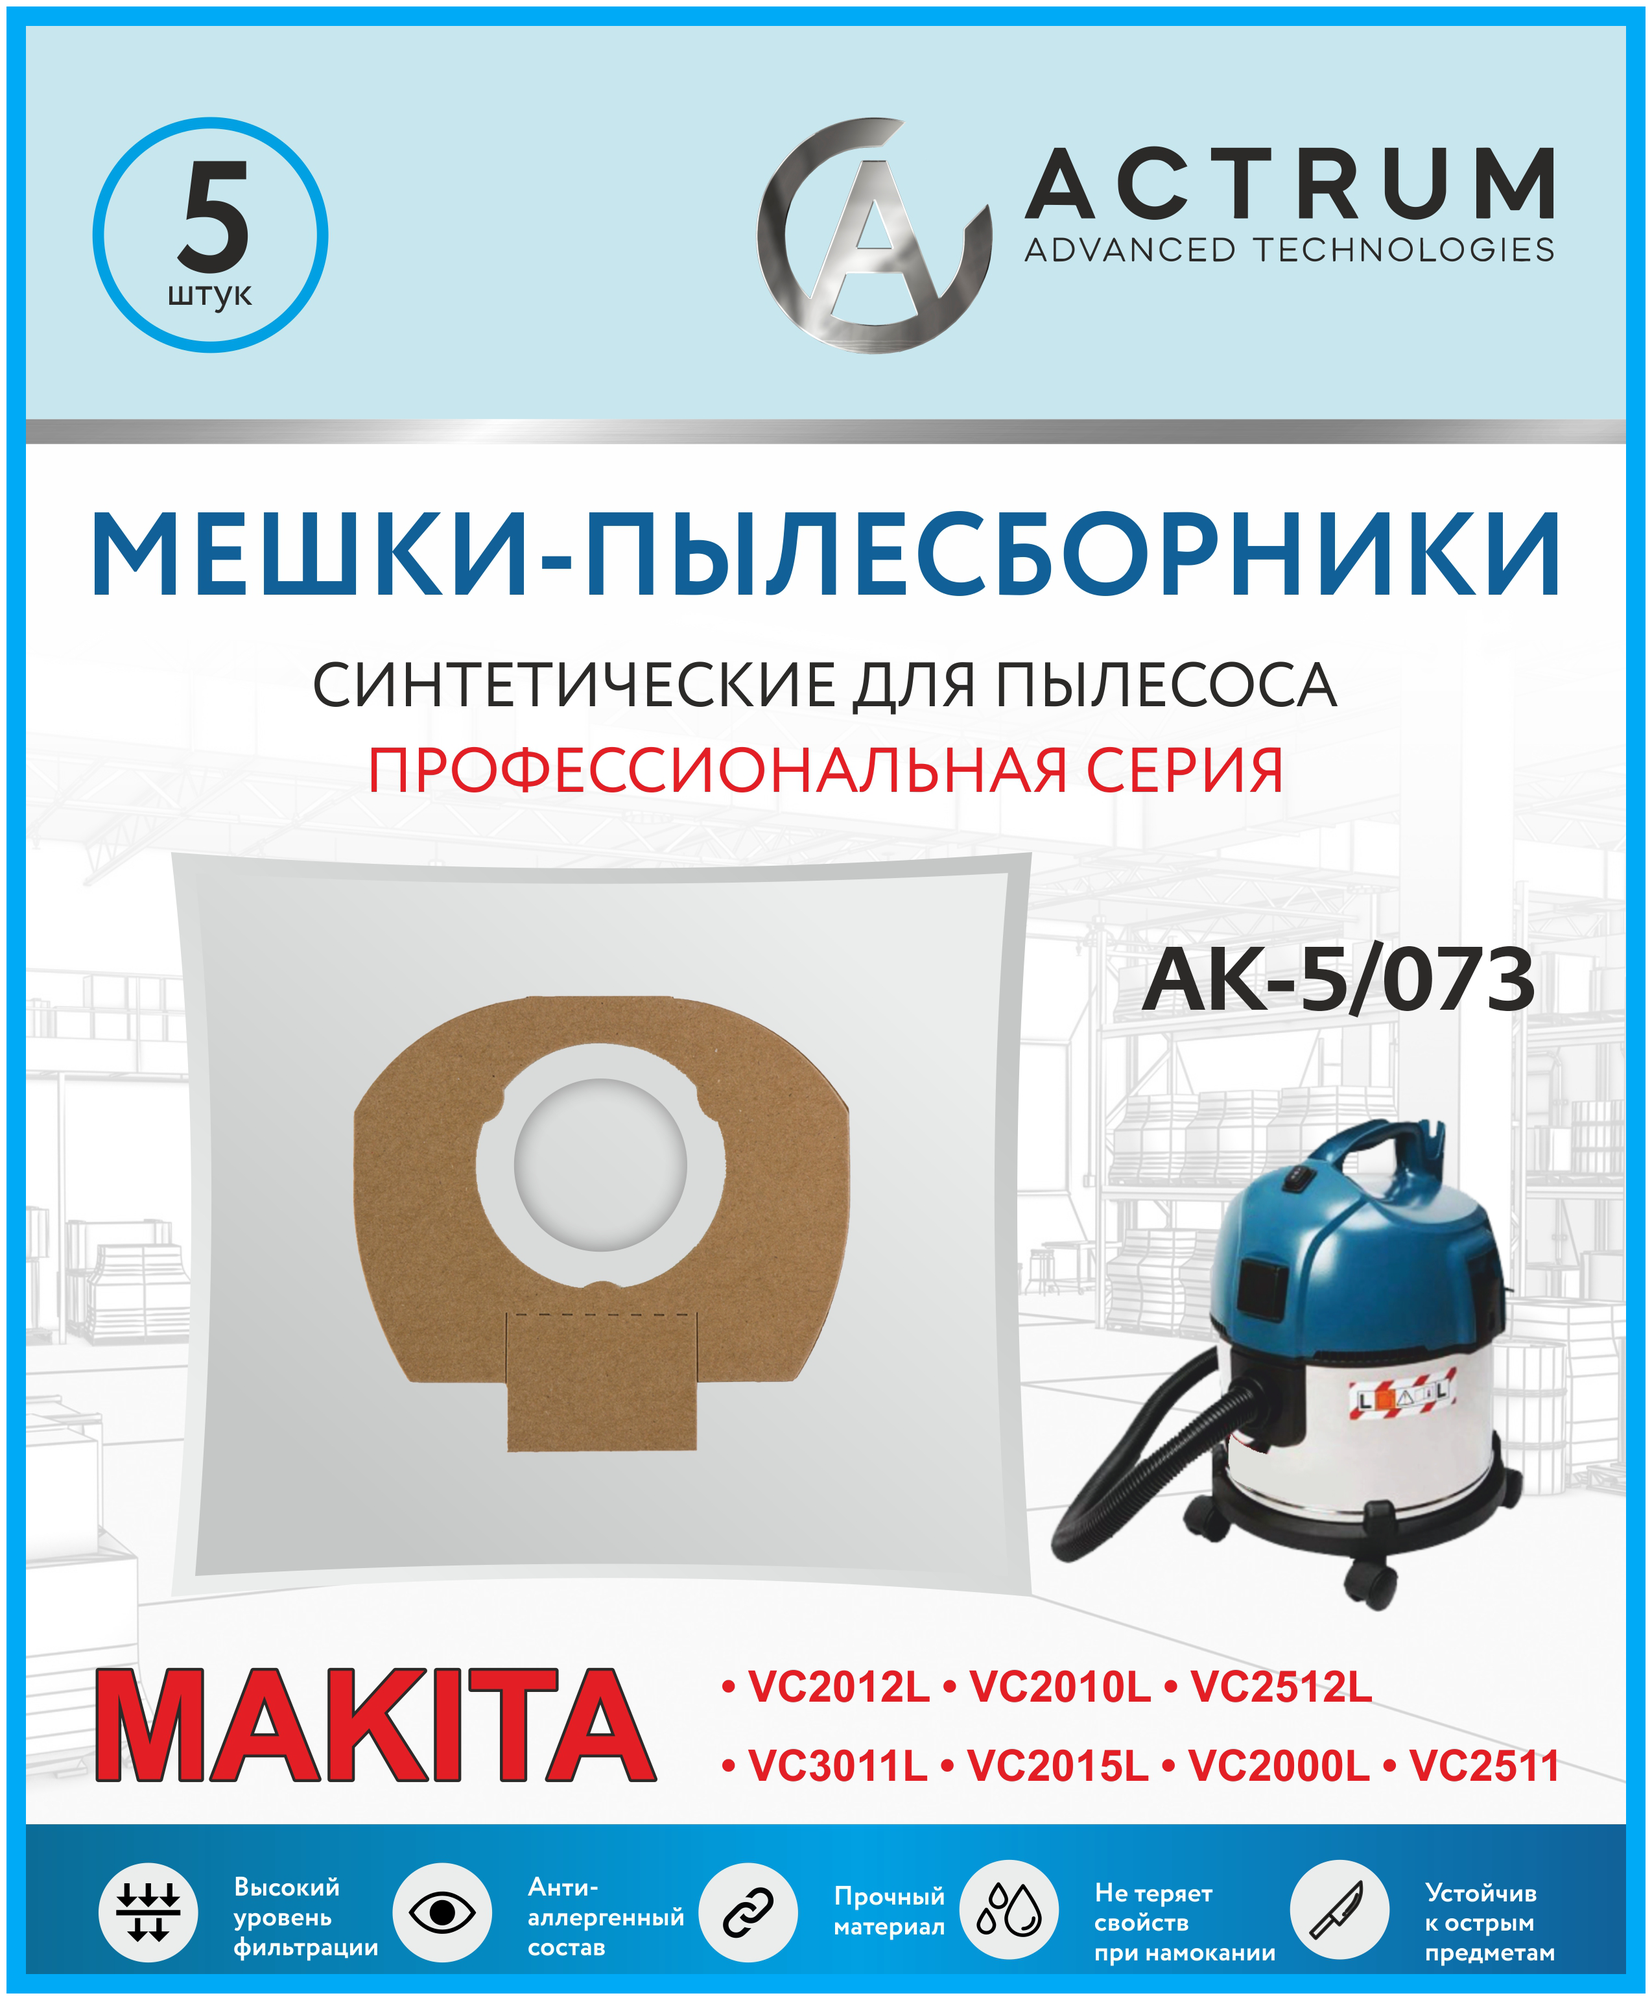 Мешки-пылесборники ACTRUM AK-5/073 для промышленных пылесосов MAKITA METABO STIHL AEG HILTI и др